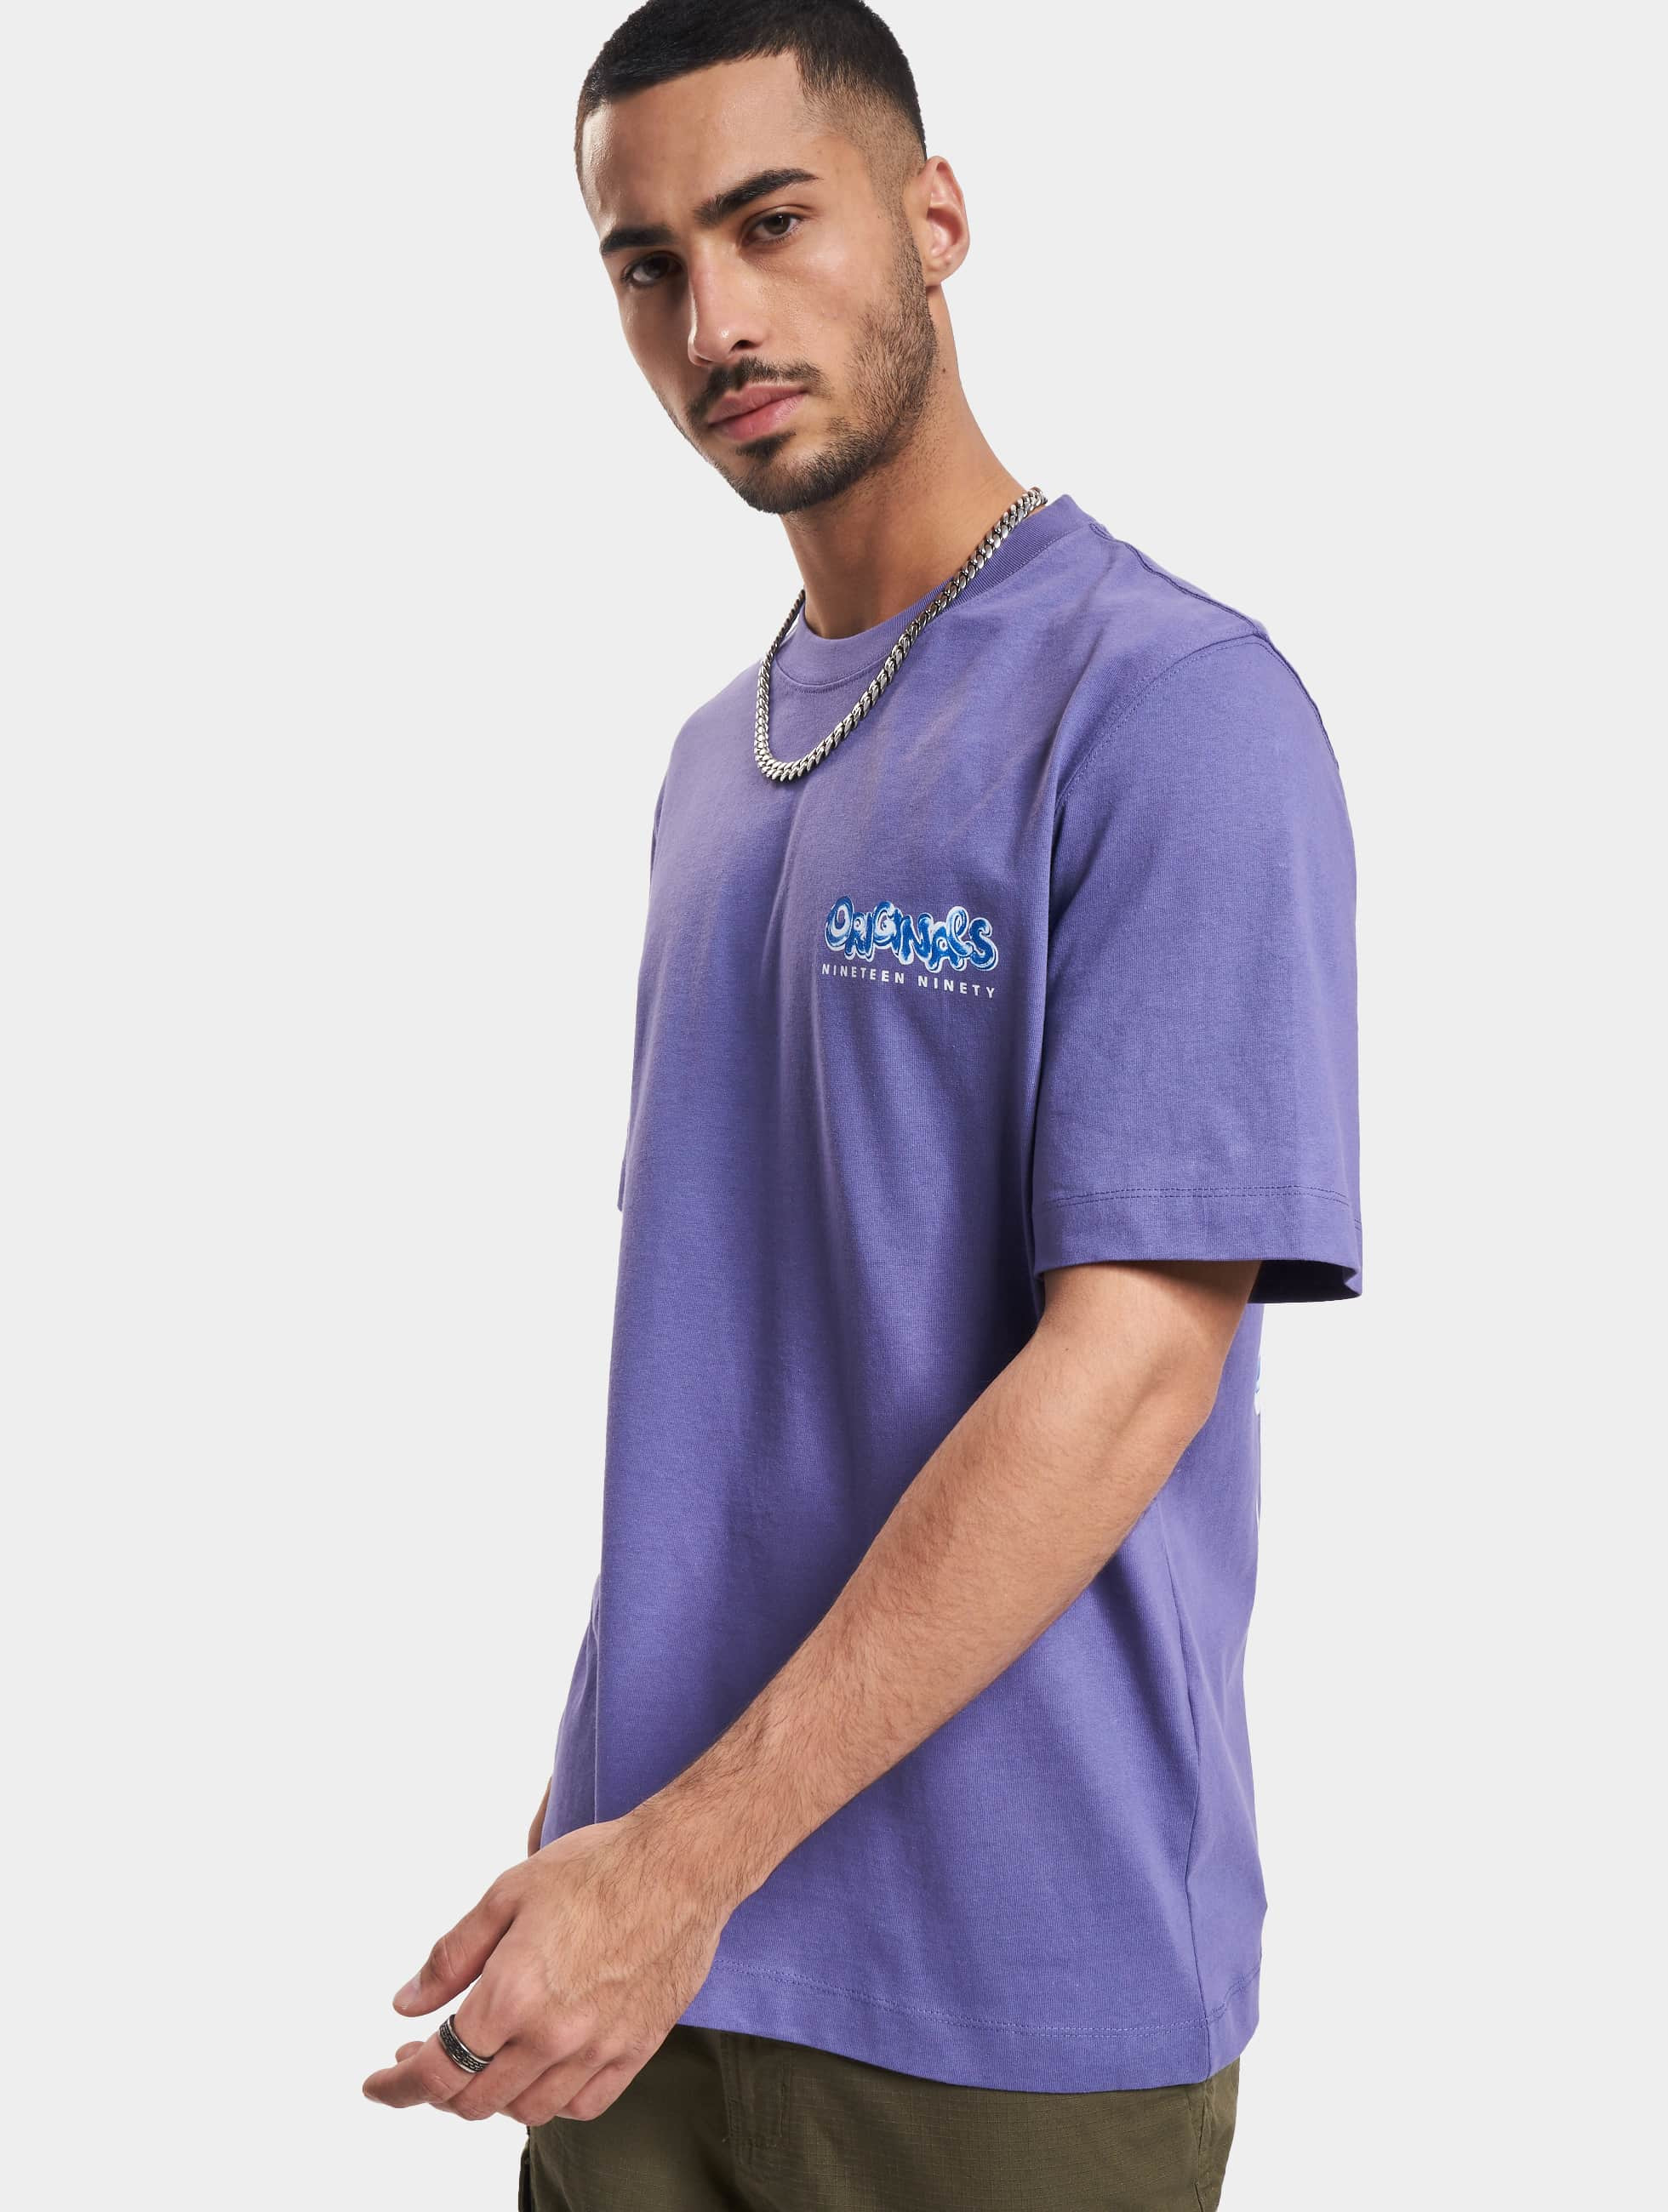 Jack & Jones Overwear / T-Shirt Wavetext Crew Neck in purple 1013169